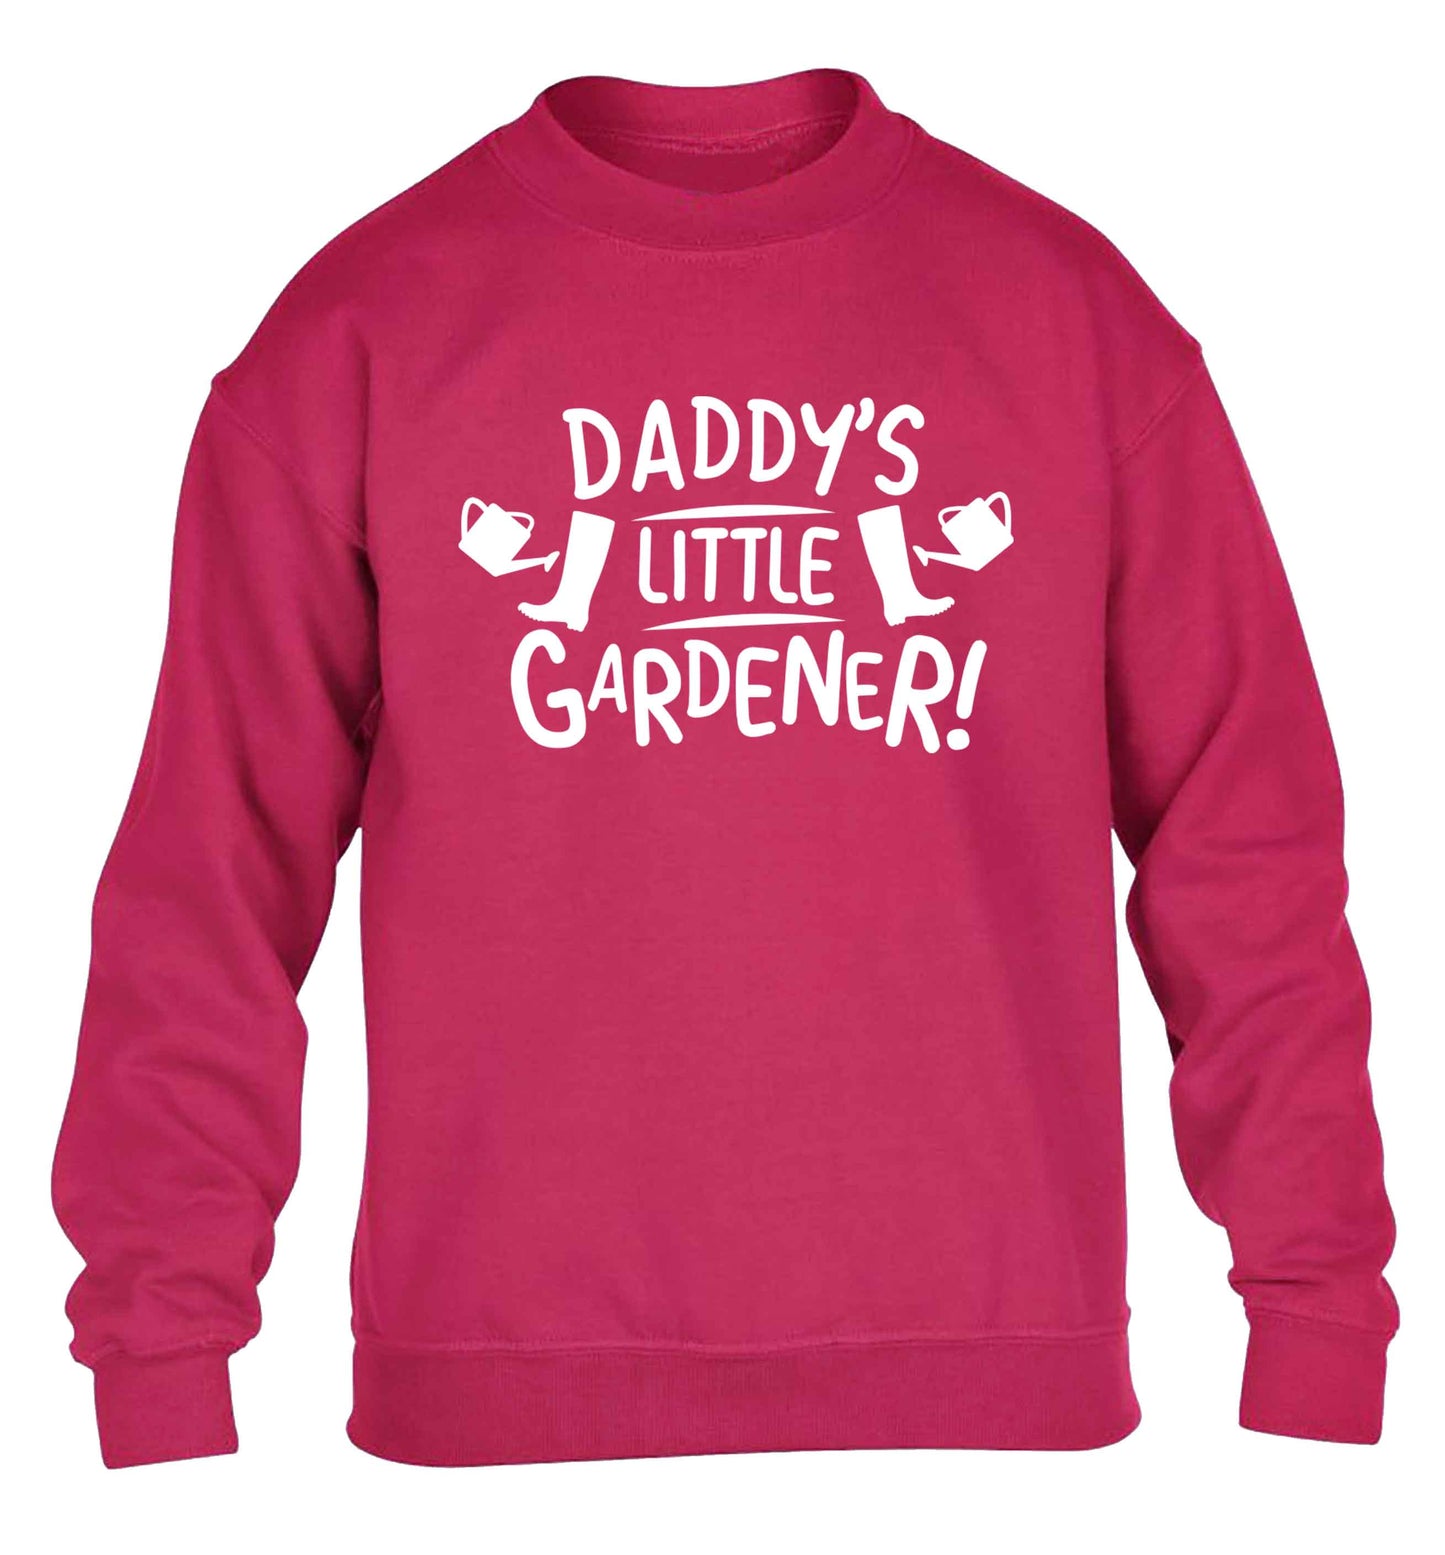 Daddy's little gardener children's pink sweater 12-13 Years